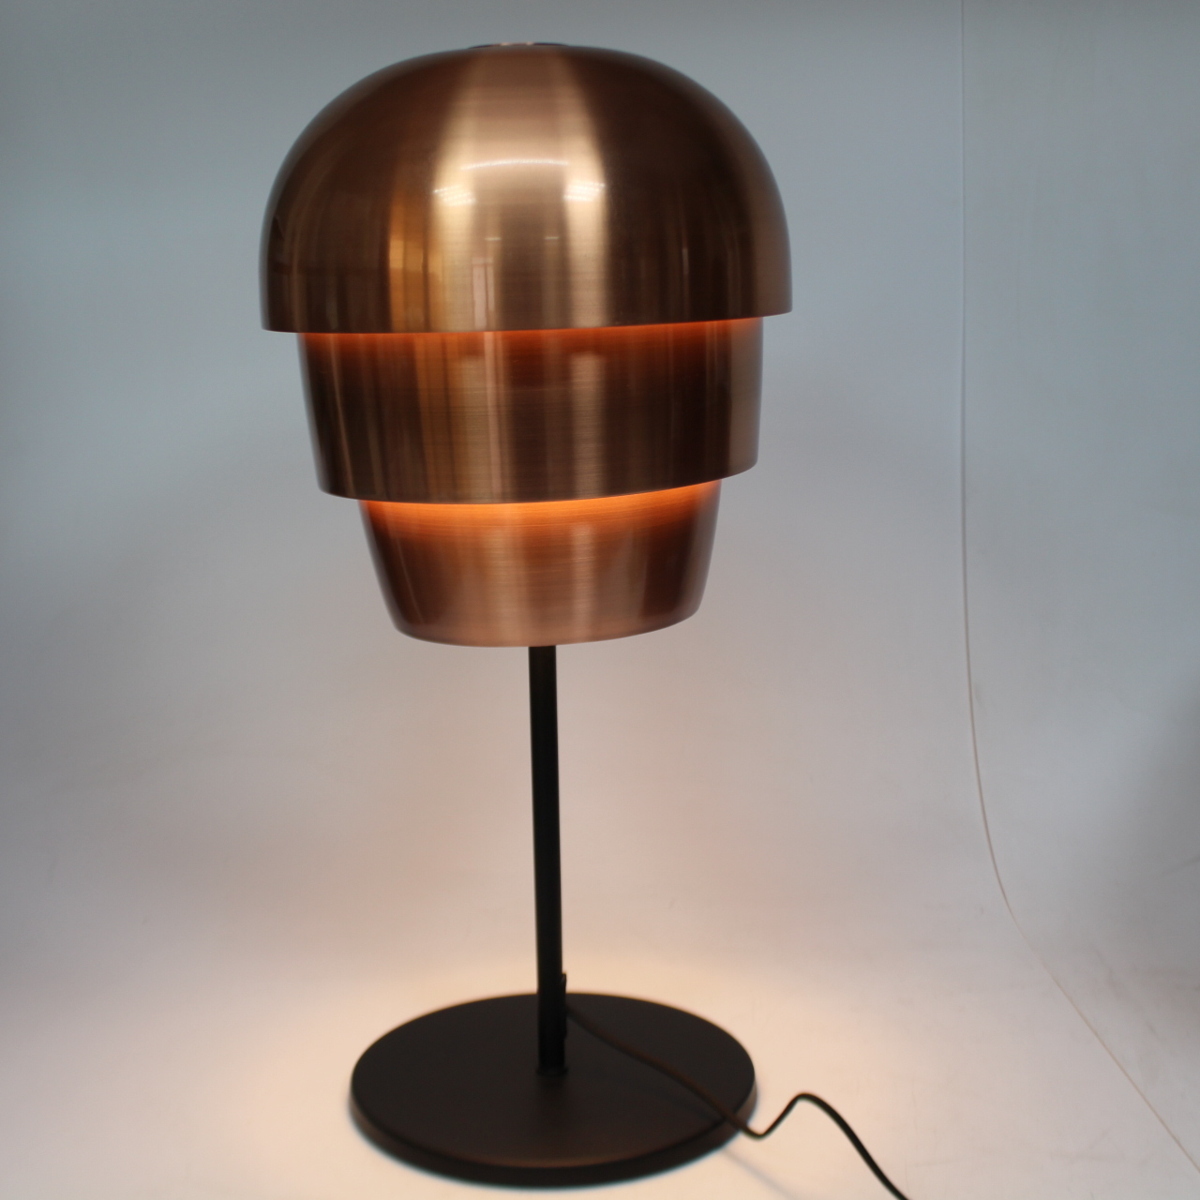 Pine cone テーブルランプ 卓上照明 ボーコンセプト パインコーン 2013年製